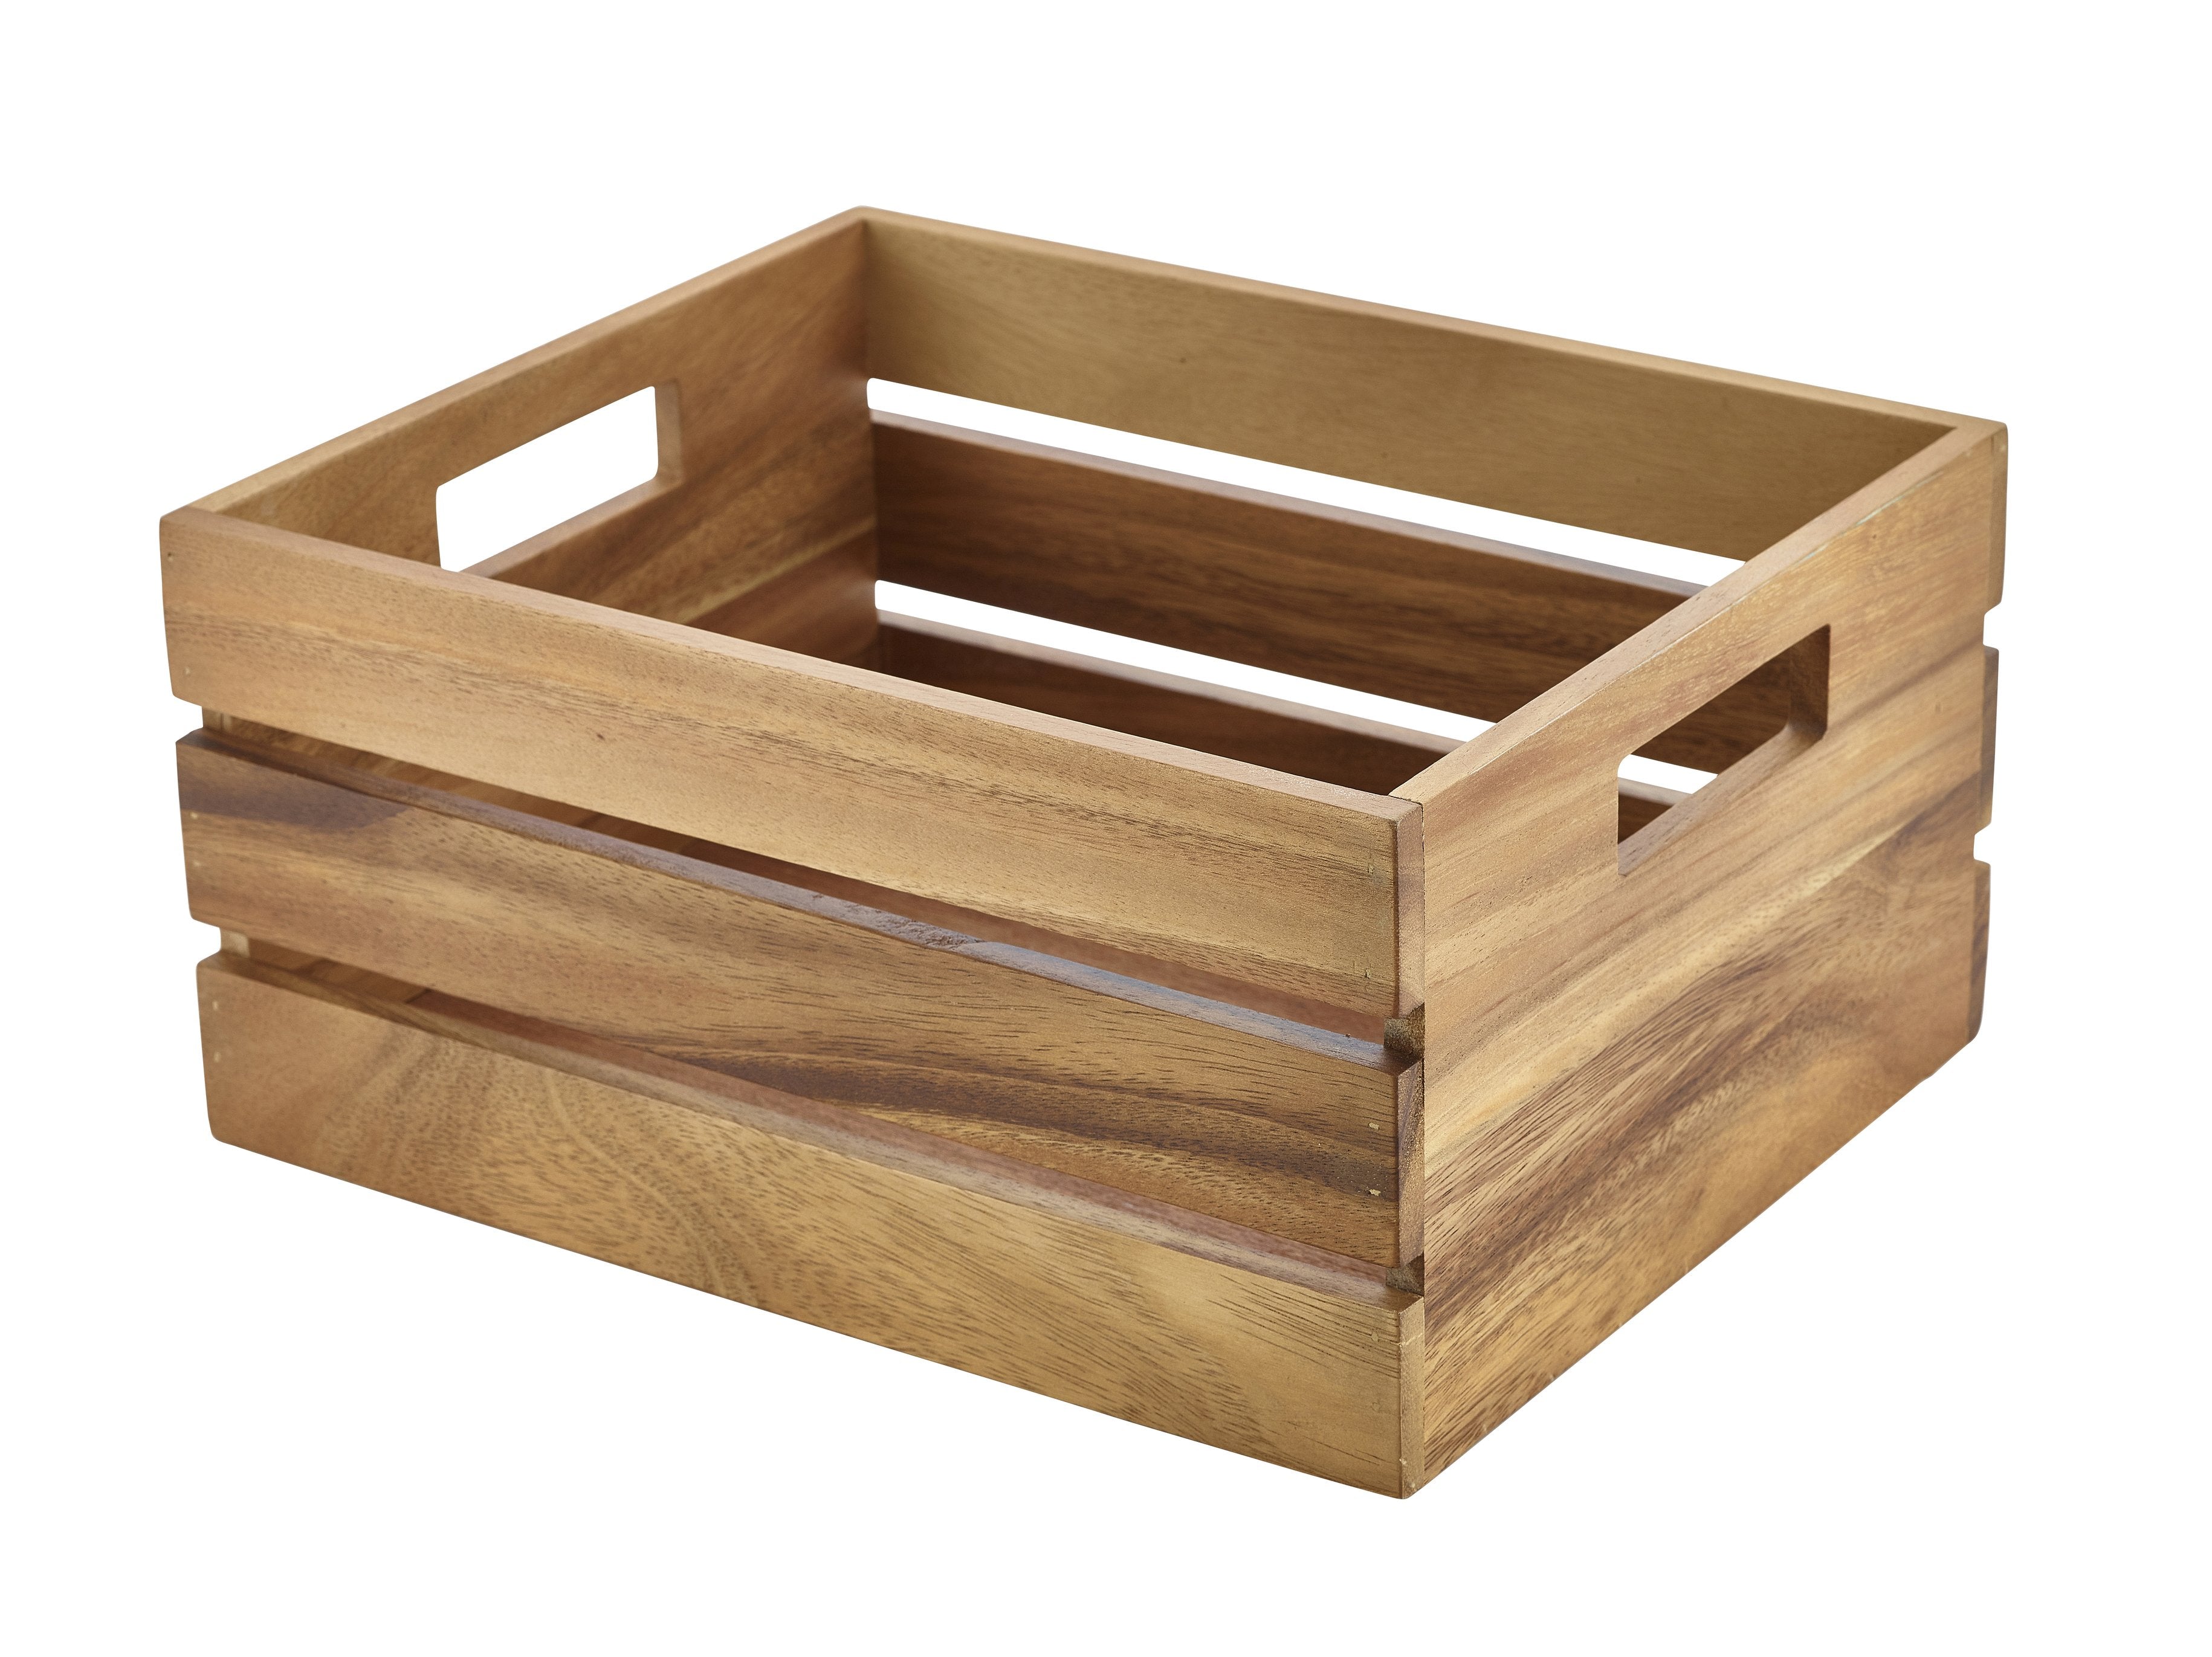 Acacia Wood Box/Riser GN 1/2